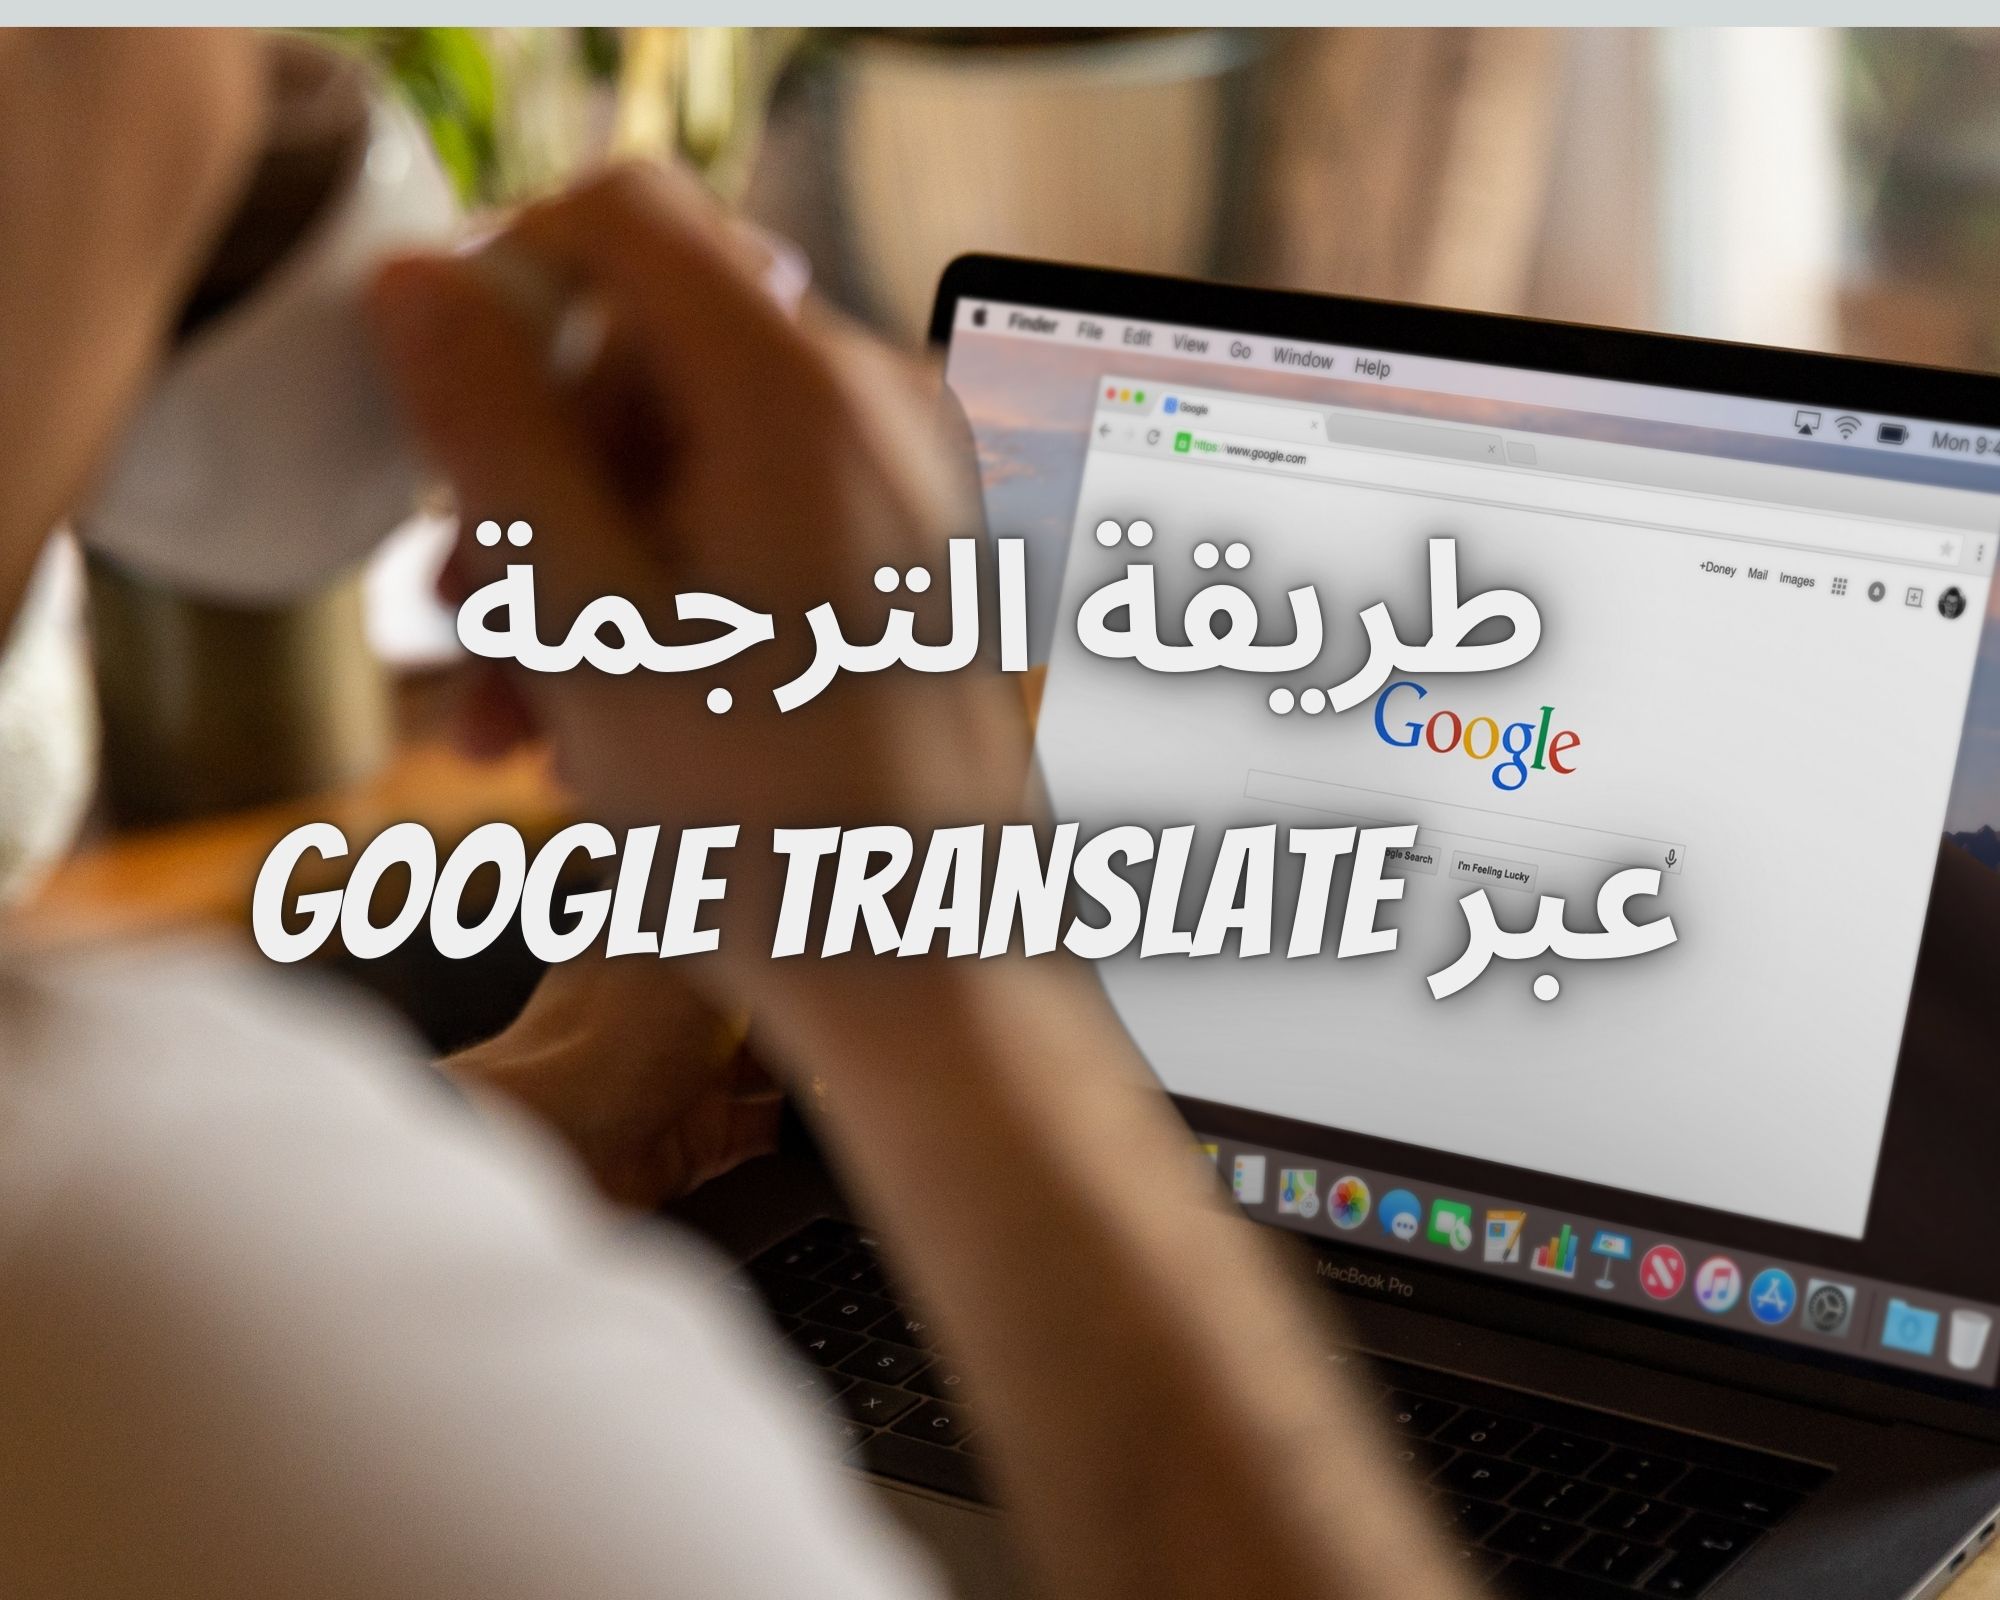 طريقة الترجمة عبر Google Translate باستخدام الكاميرا بدون مجهود في ثوانِ